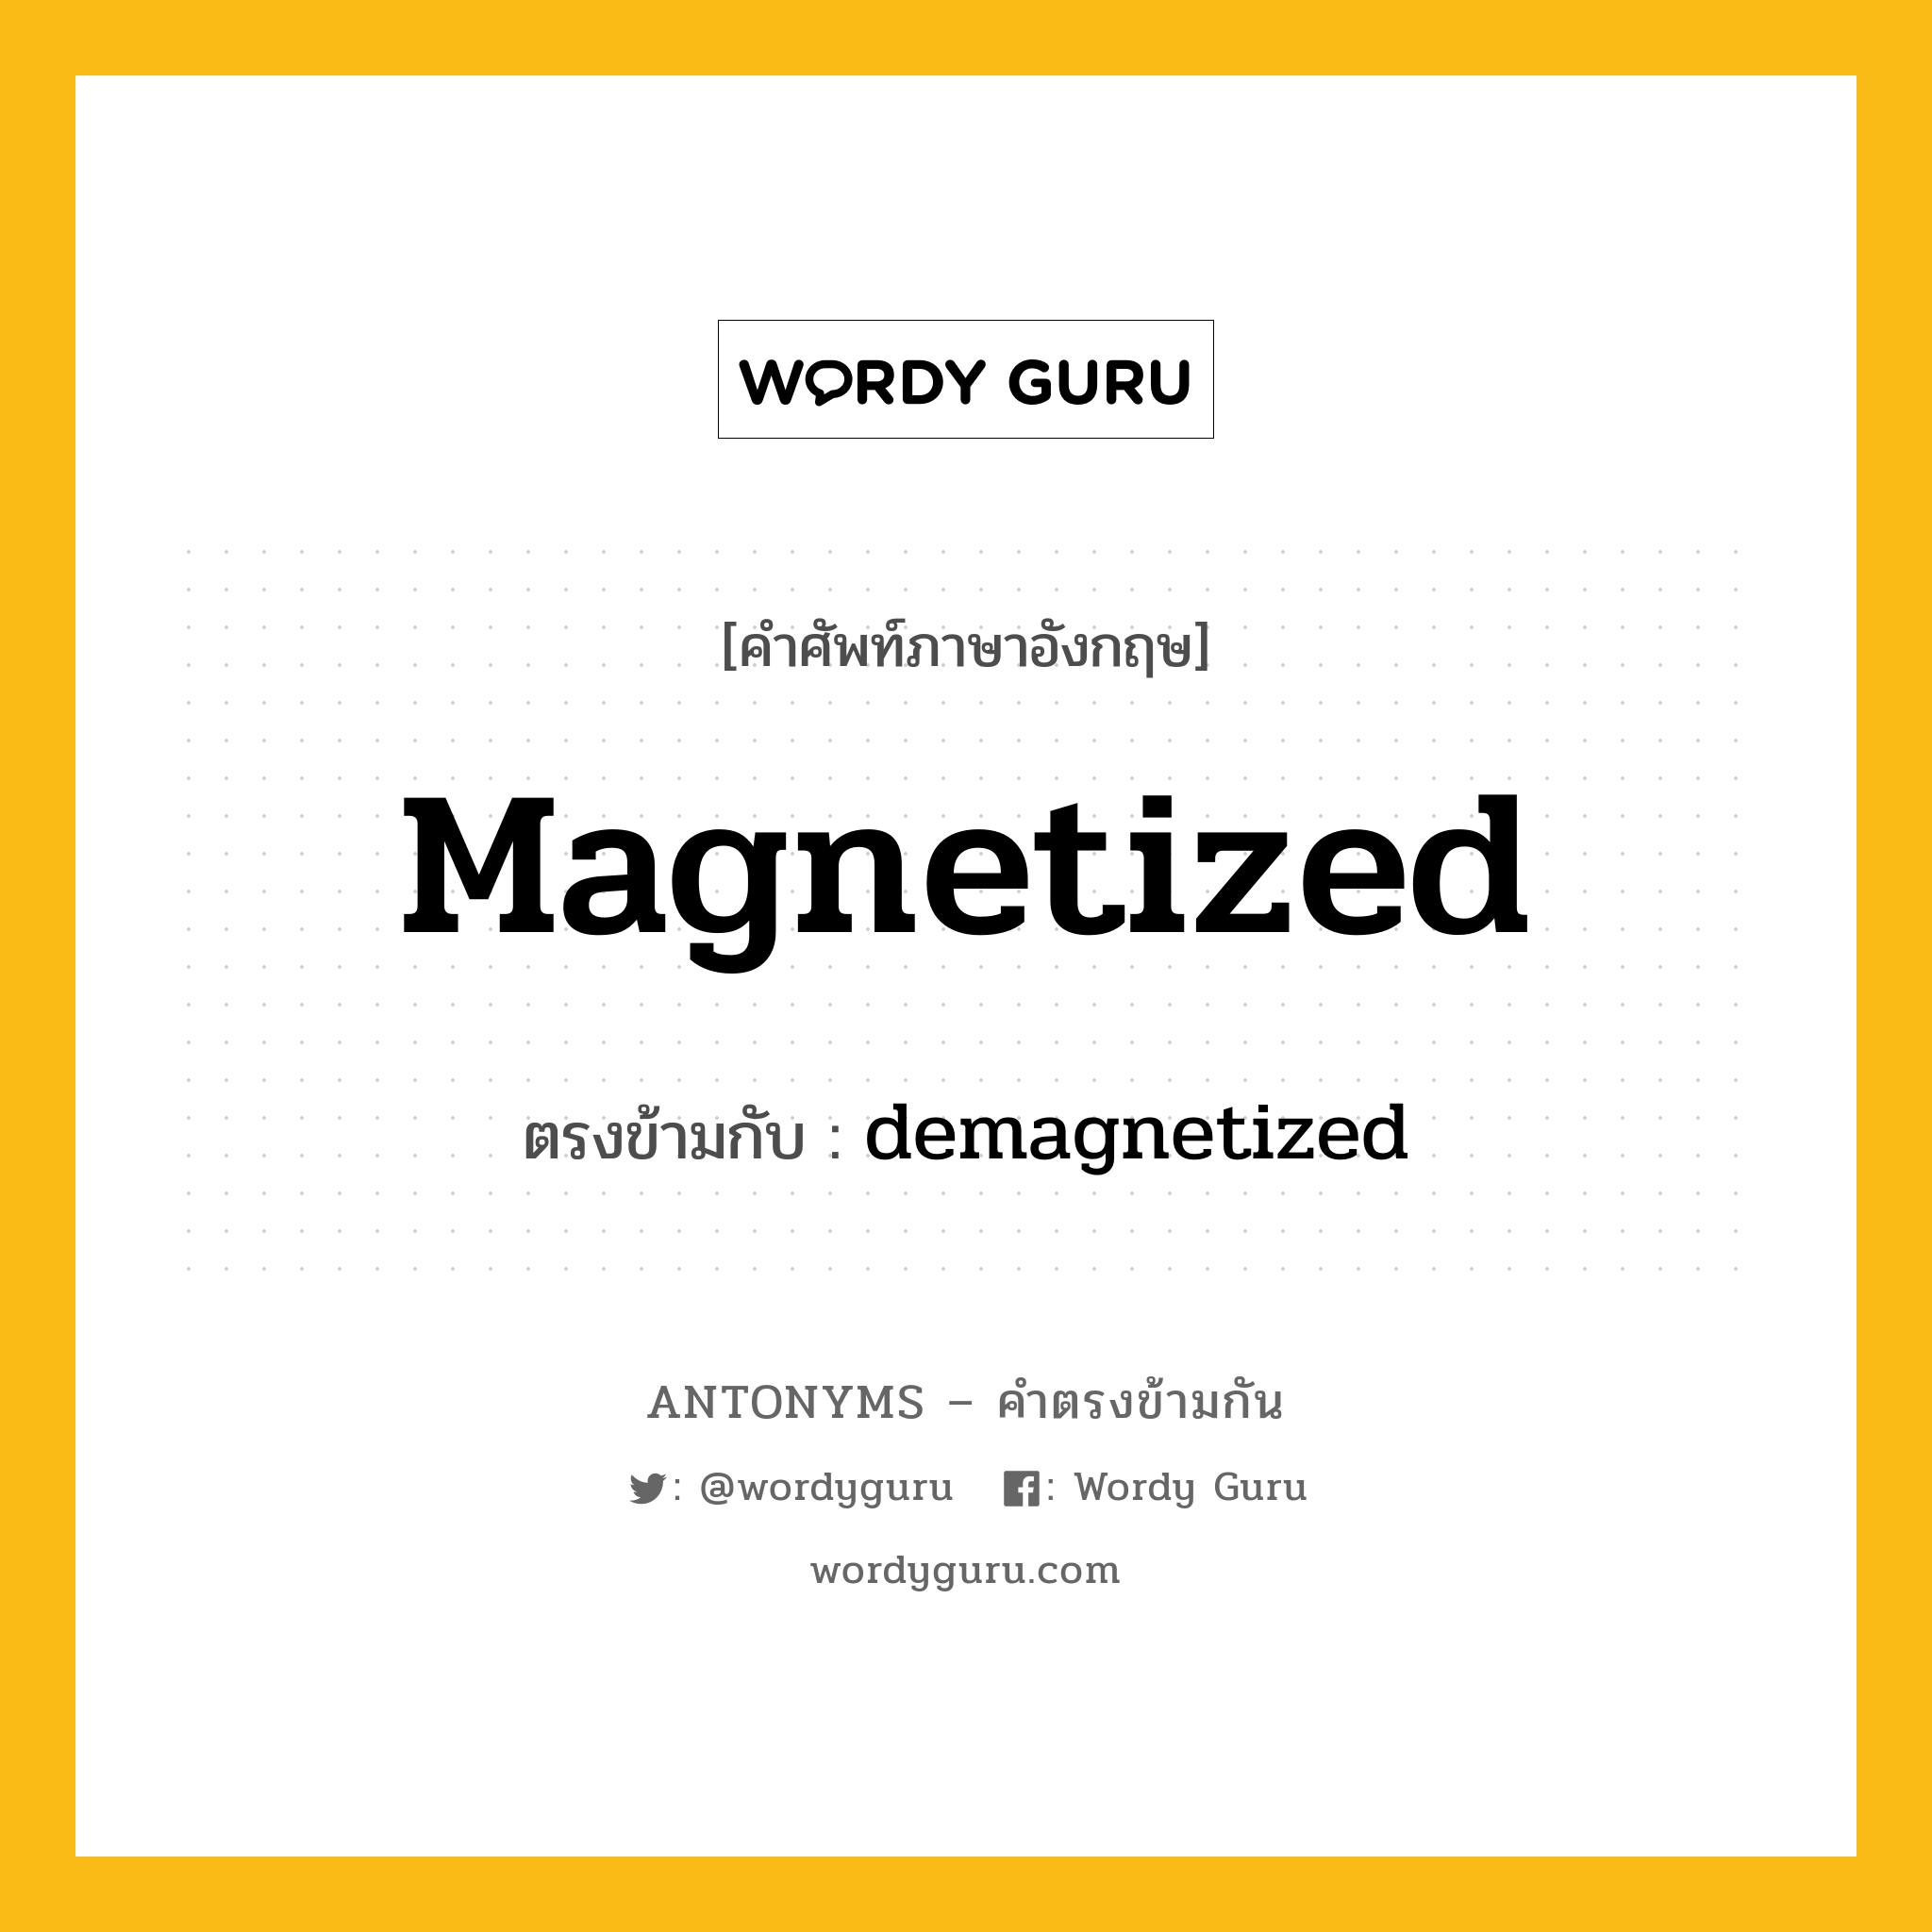 magnetized เป็นคำตรงข้ามกับคำไหนบ้าง?, คำศัพท์ภาษาอังกฤษ magnetized ตรงข้ามกับ demagnetized หมวด demagnetized